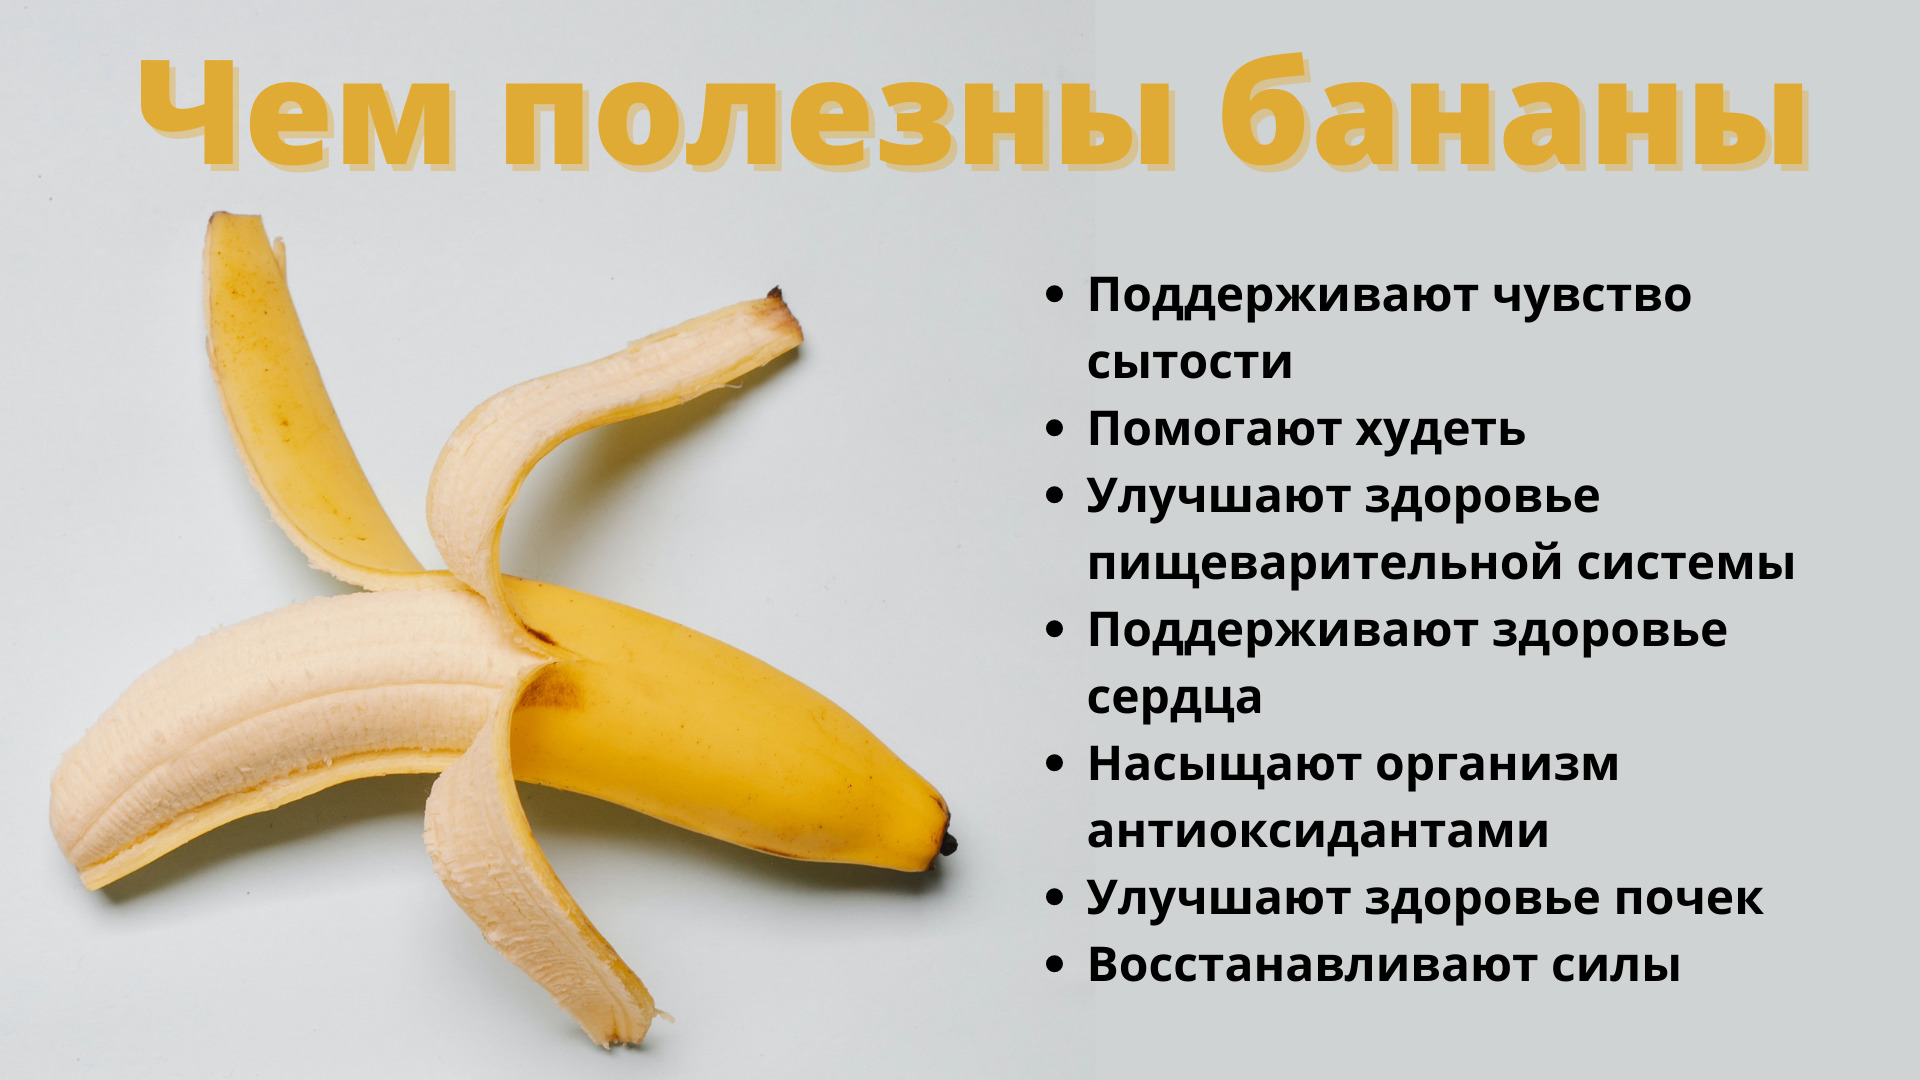 Бананы польза и вред для организма человека: инфографика ОСН